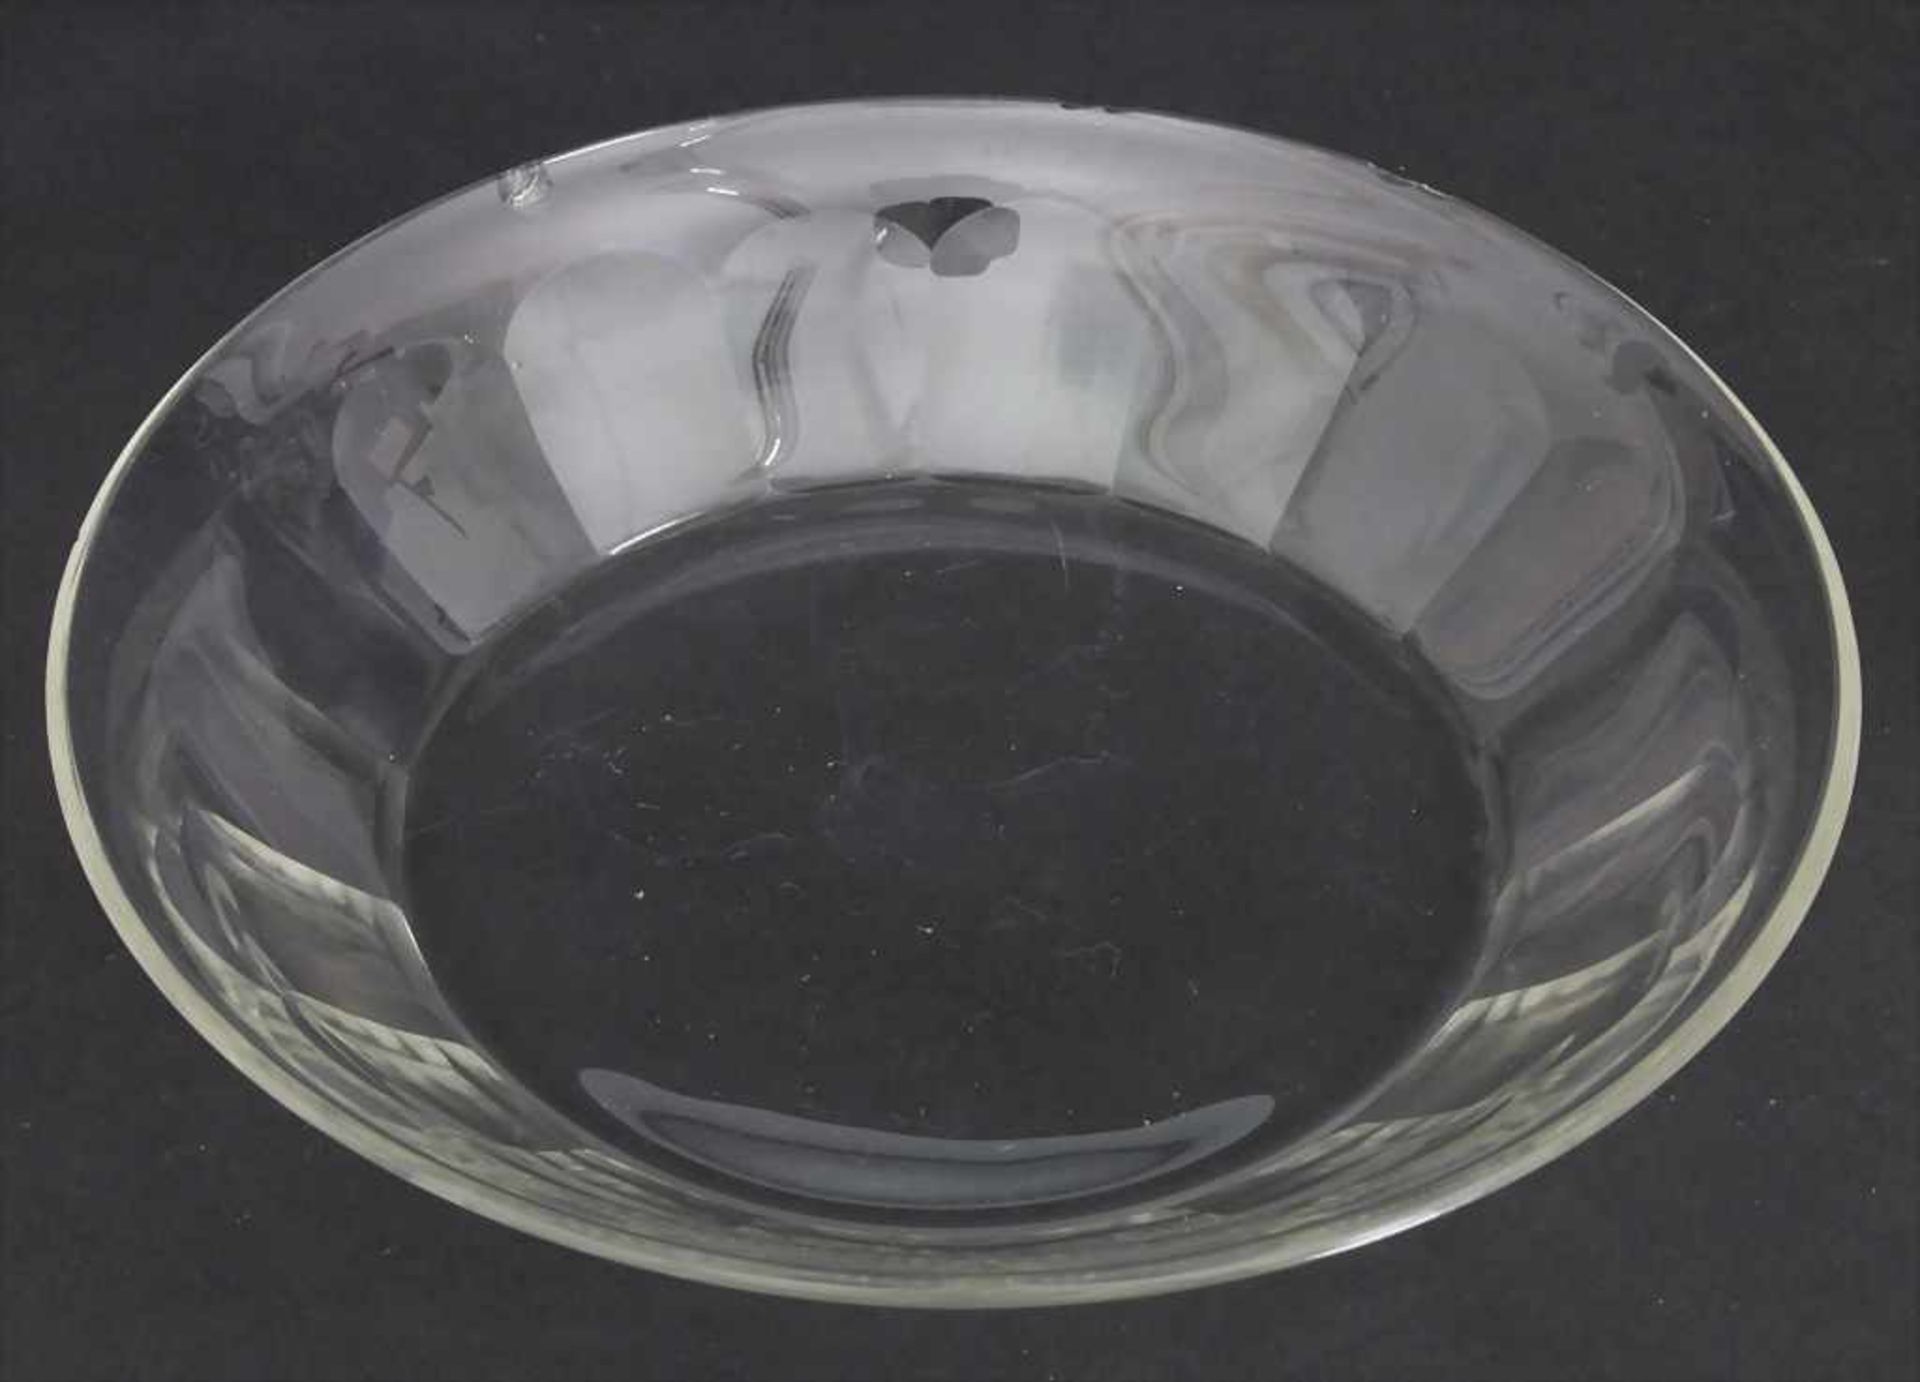 6 Glasschalen / 6 glass bowls, J. & L. Lobmeyr, Wien, um 1900 - Image 2 of 3